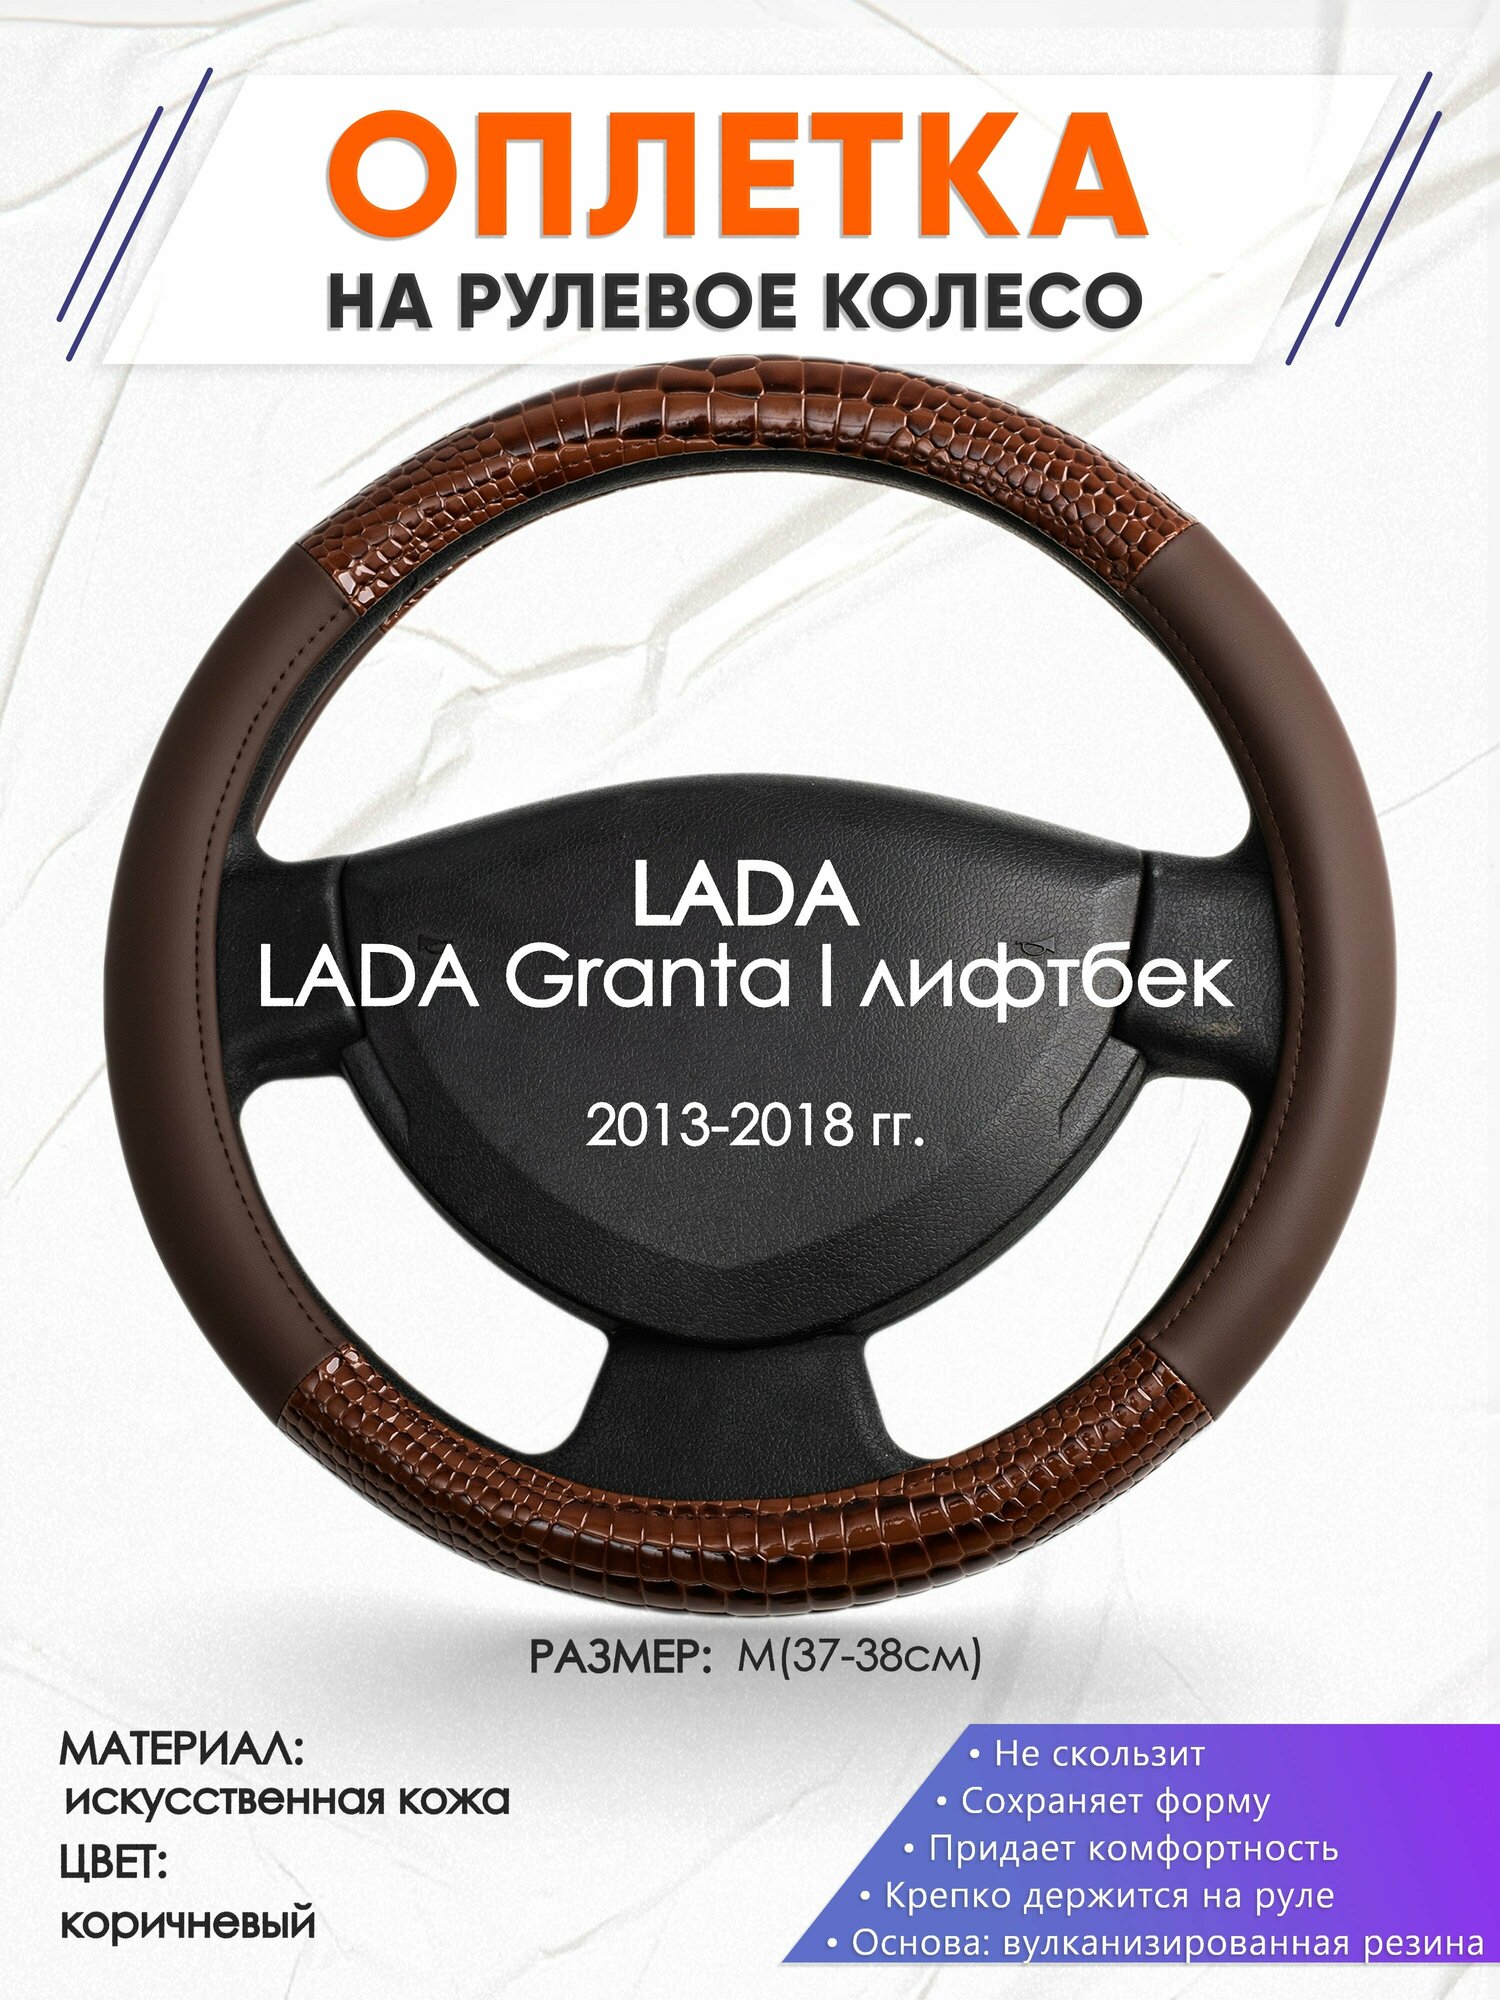 Оплетка наруль для LADA Granta I лифтбек(Лада Гранта) 2013-2018 годов выпуска, размер M(37-38см), Искусственная кожа 85